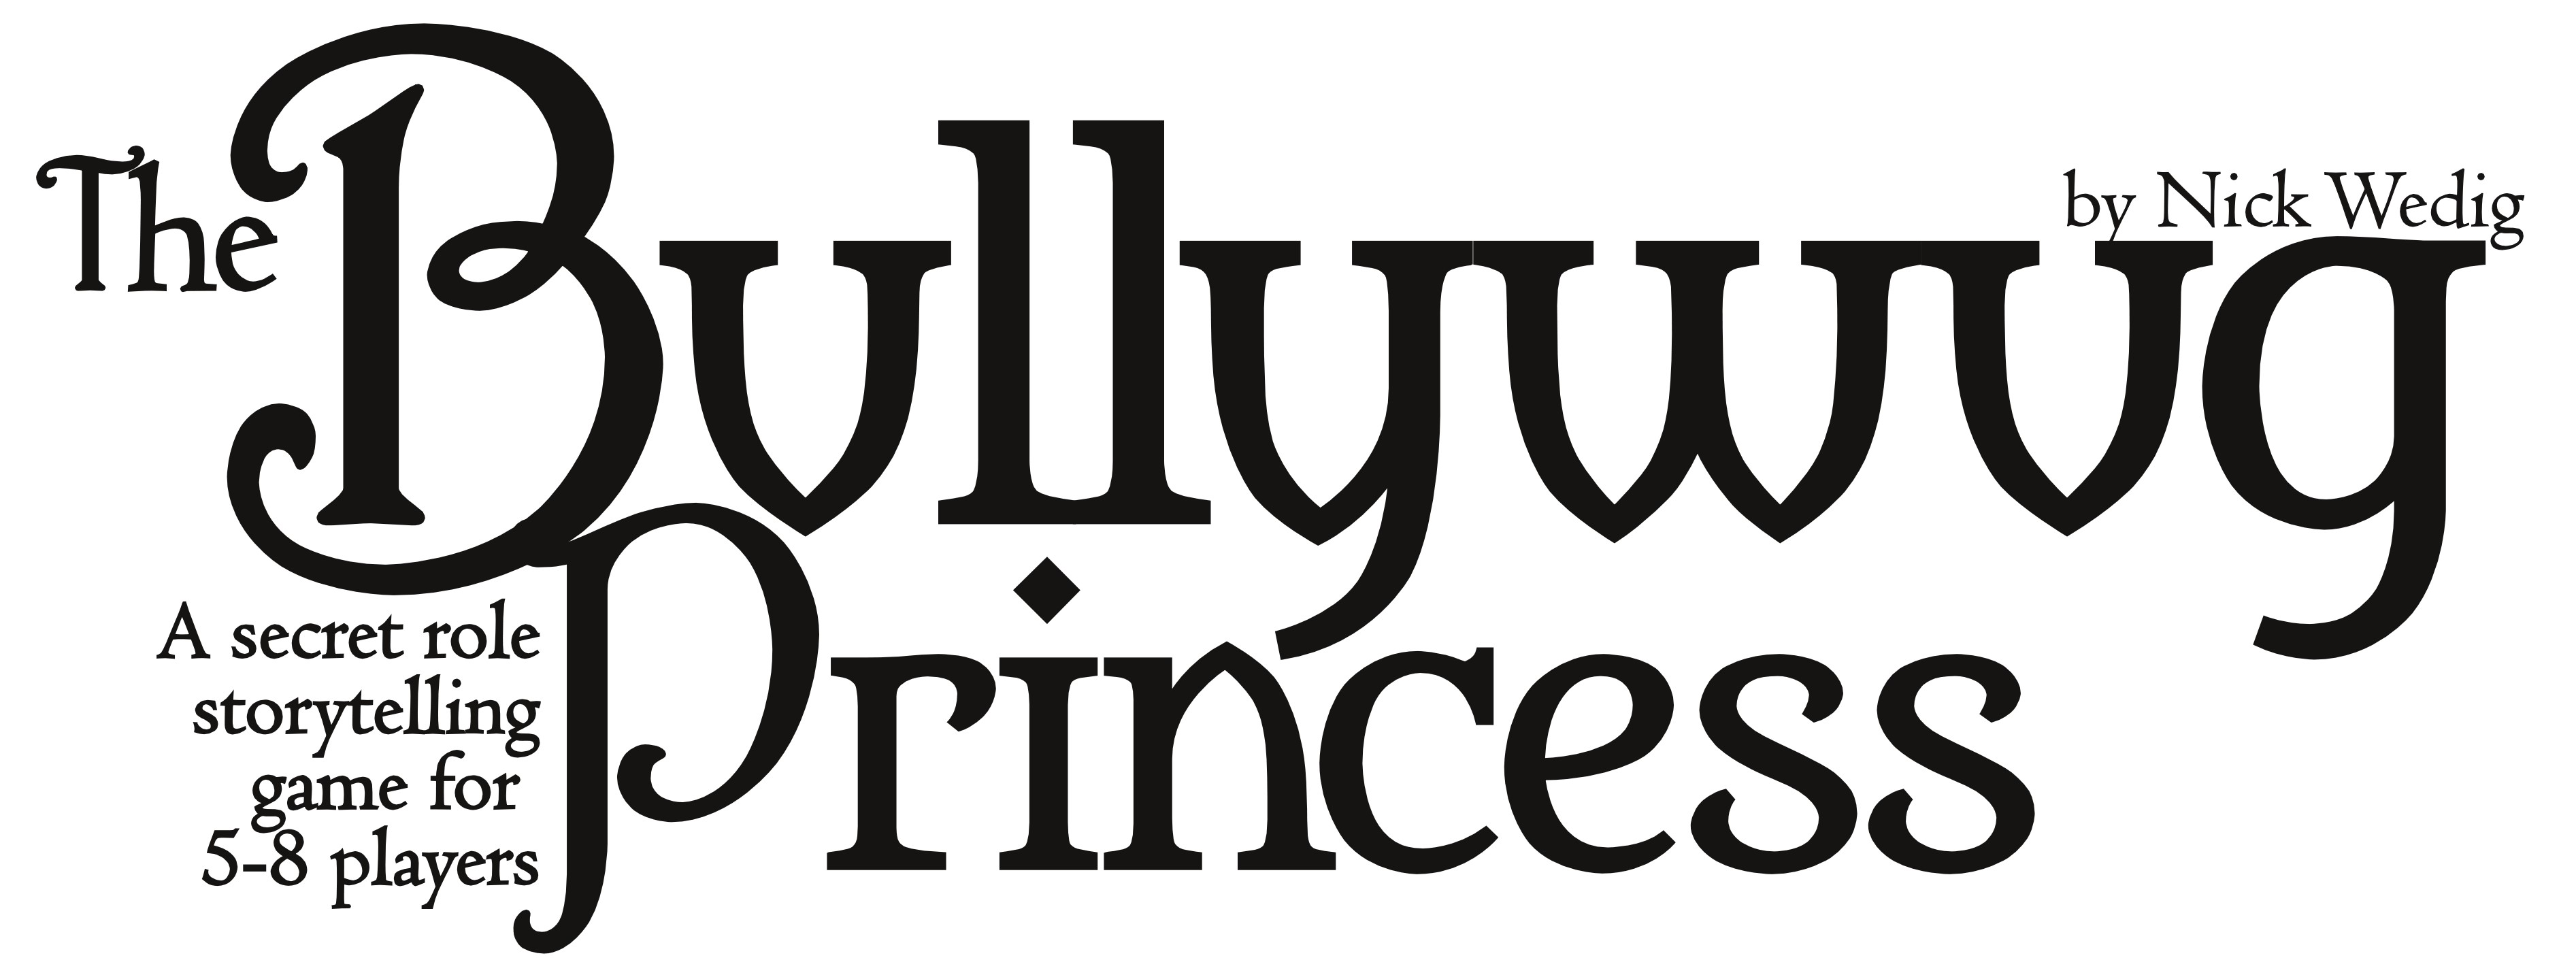 The Bulywug Princess.PDF